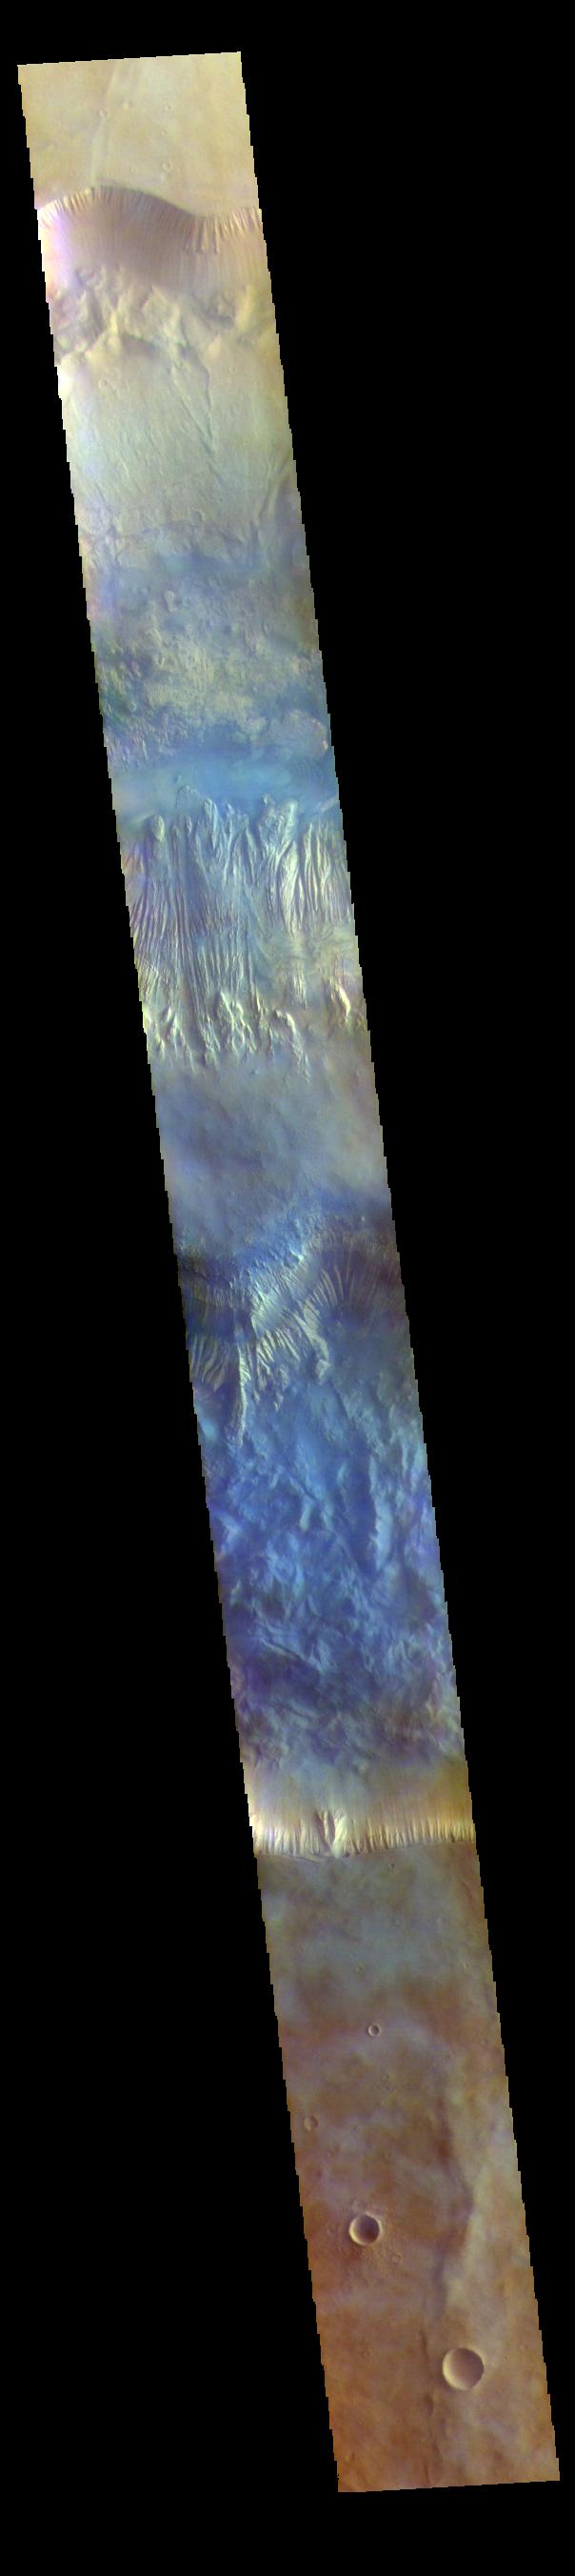 PIA25100: Hebes Chasma - False Color